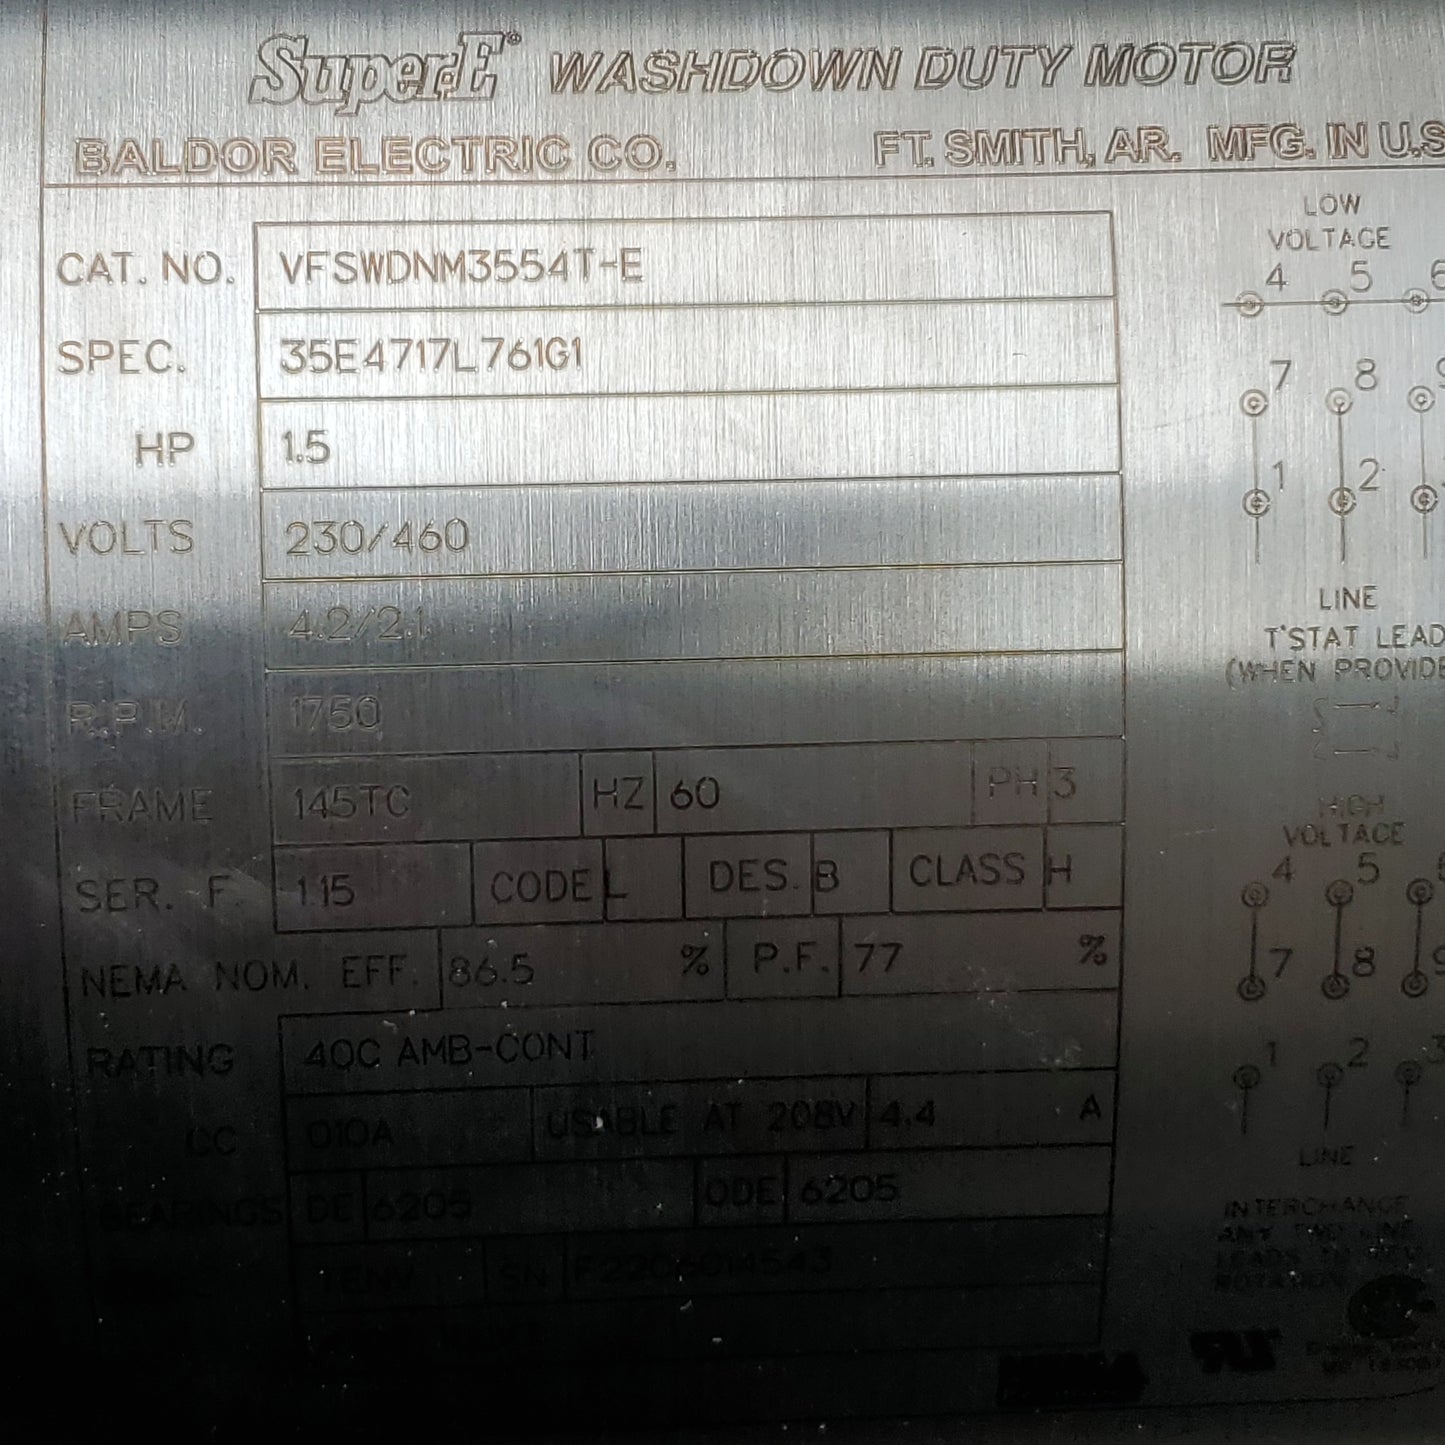 ABB BALDOR RELIENCER Stainless Motor 3 Phase 1.5 HP 230/460V 1750 RPM VFS WDNM3554G - E (New)